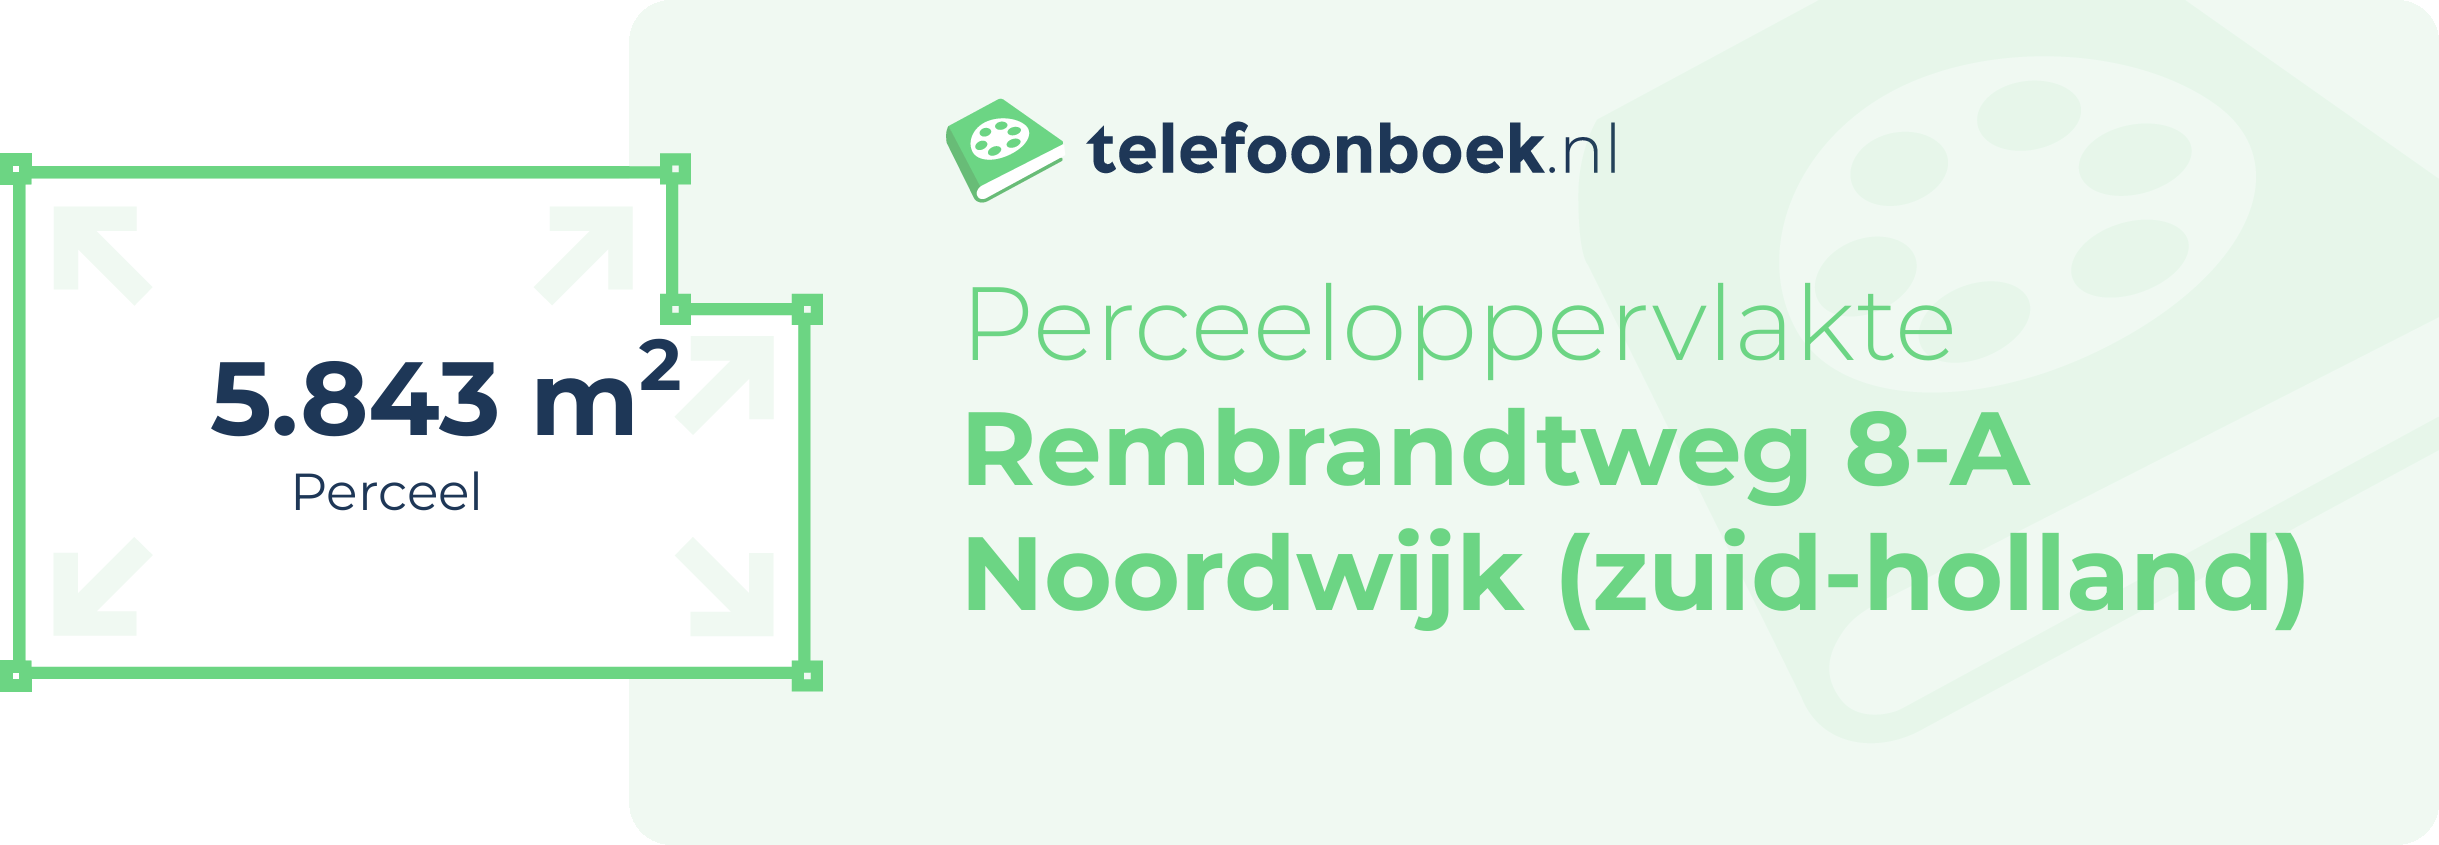 Perceeloppervlakte Rembrandtweg 8-A Noordwijk (Zuid-Holland)